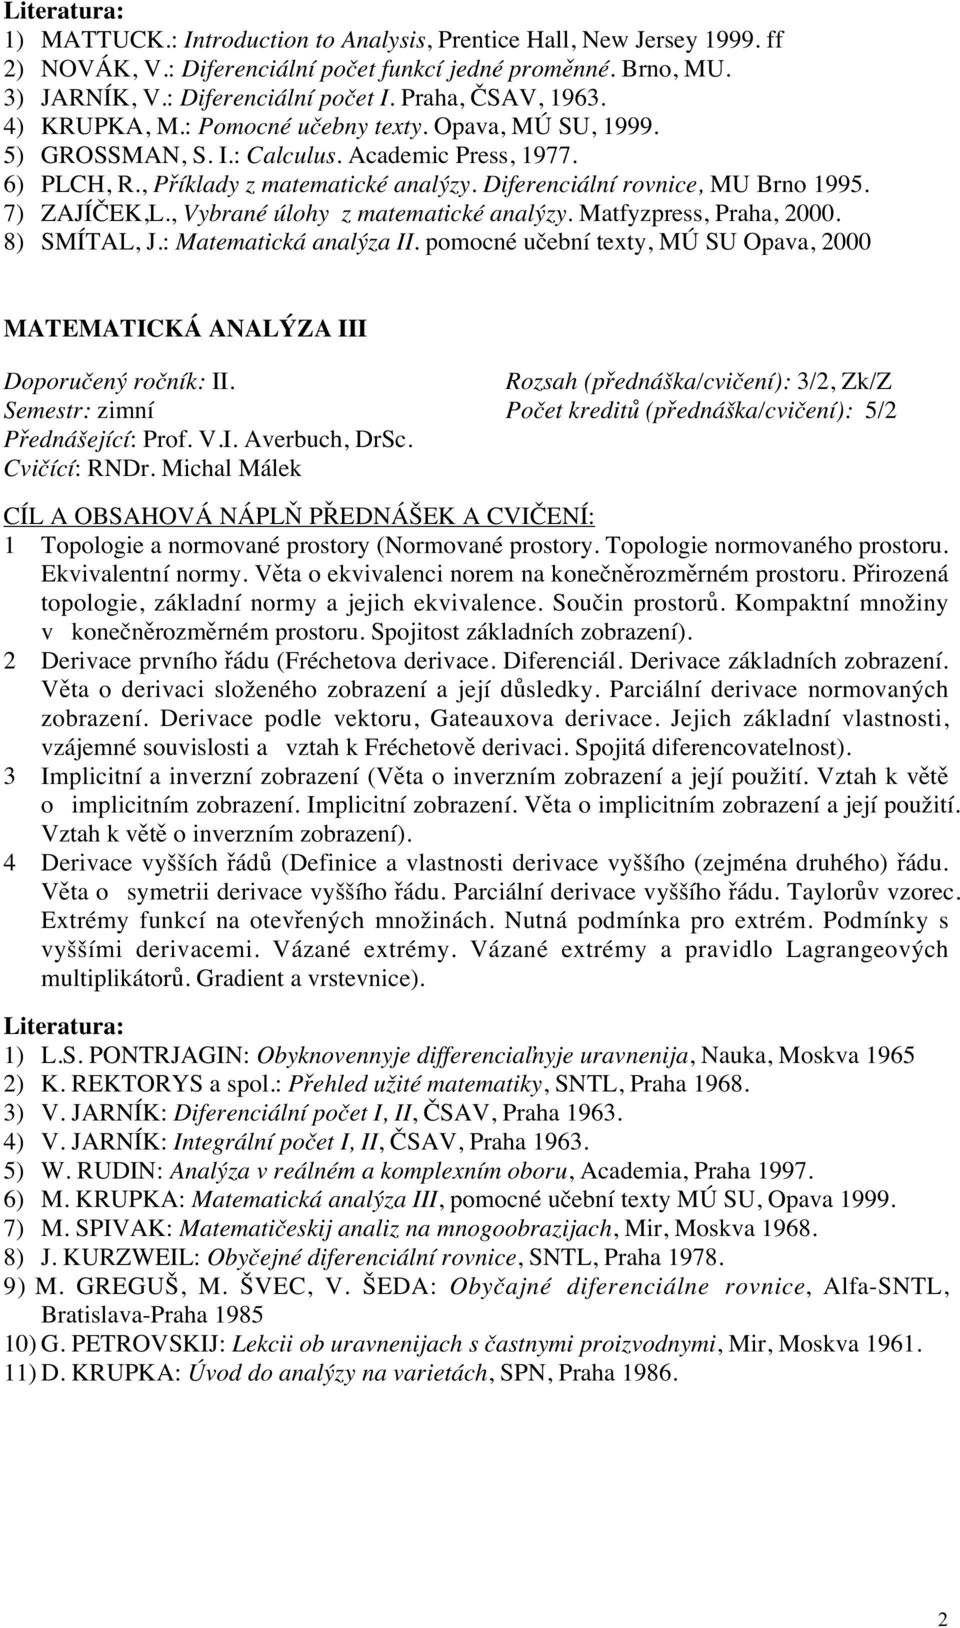 7) ZAJÍČEK,L., Vybrané úlohy z matematické analýzy. Matfyzpress, Praha, 2000. 8) SMÍTAL, J.: Matematická analýza II.